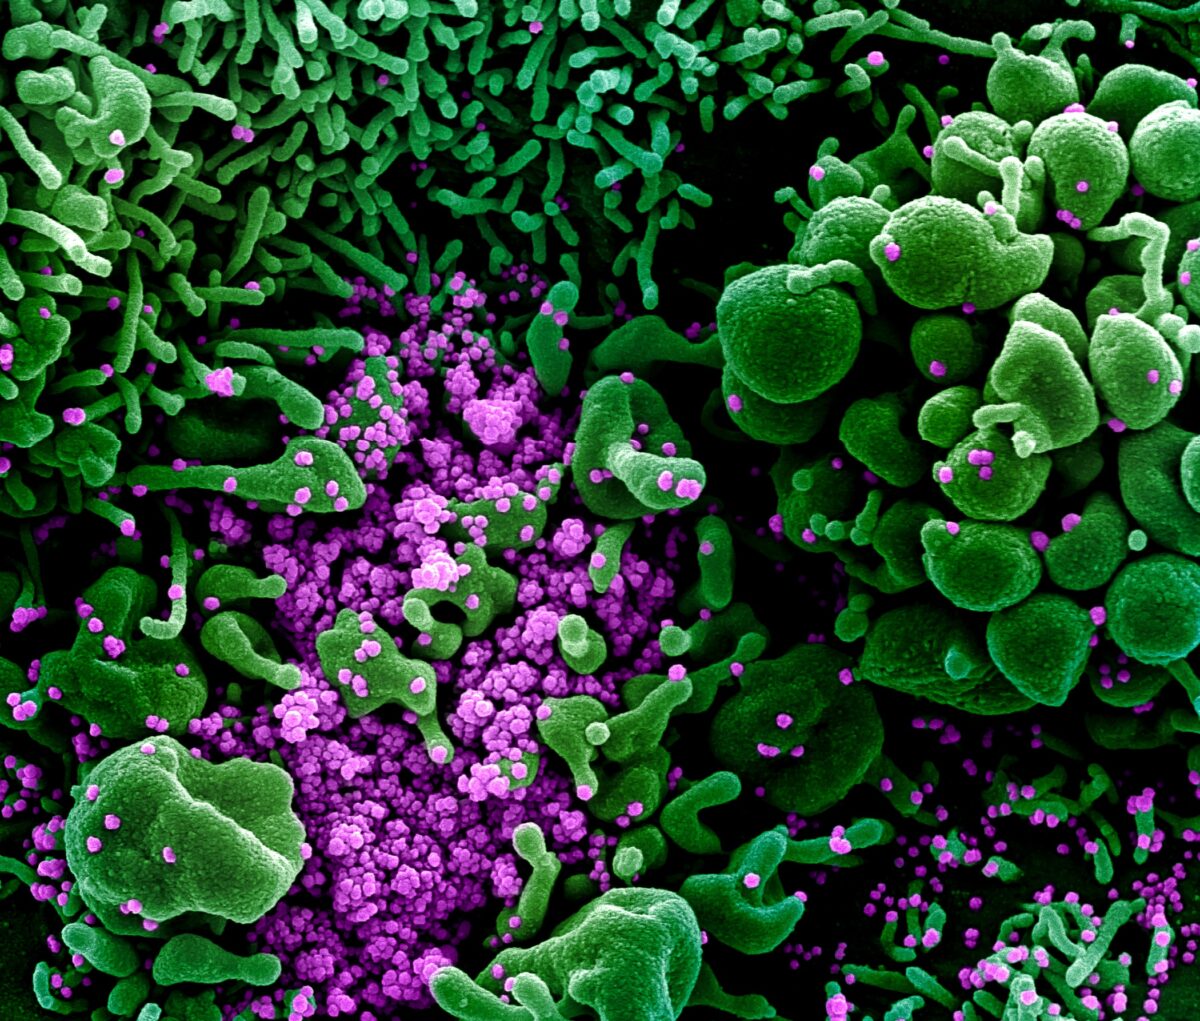 Micrografia eletrônica de varredura colorida de célula (verde) fortemente infectada com partículas do vírus CCP (roxa), comumente conhecida como SARS-CoV-2, isolada de uma amostra de paciente. Foto publicada em 16 de março de 2020 (NIAID)